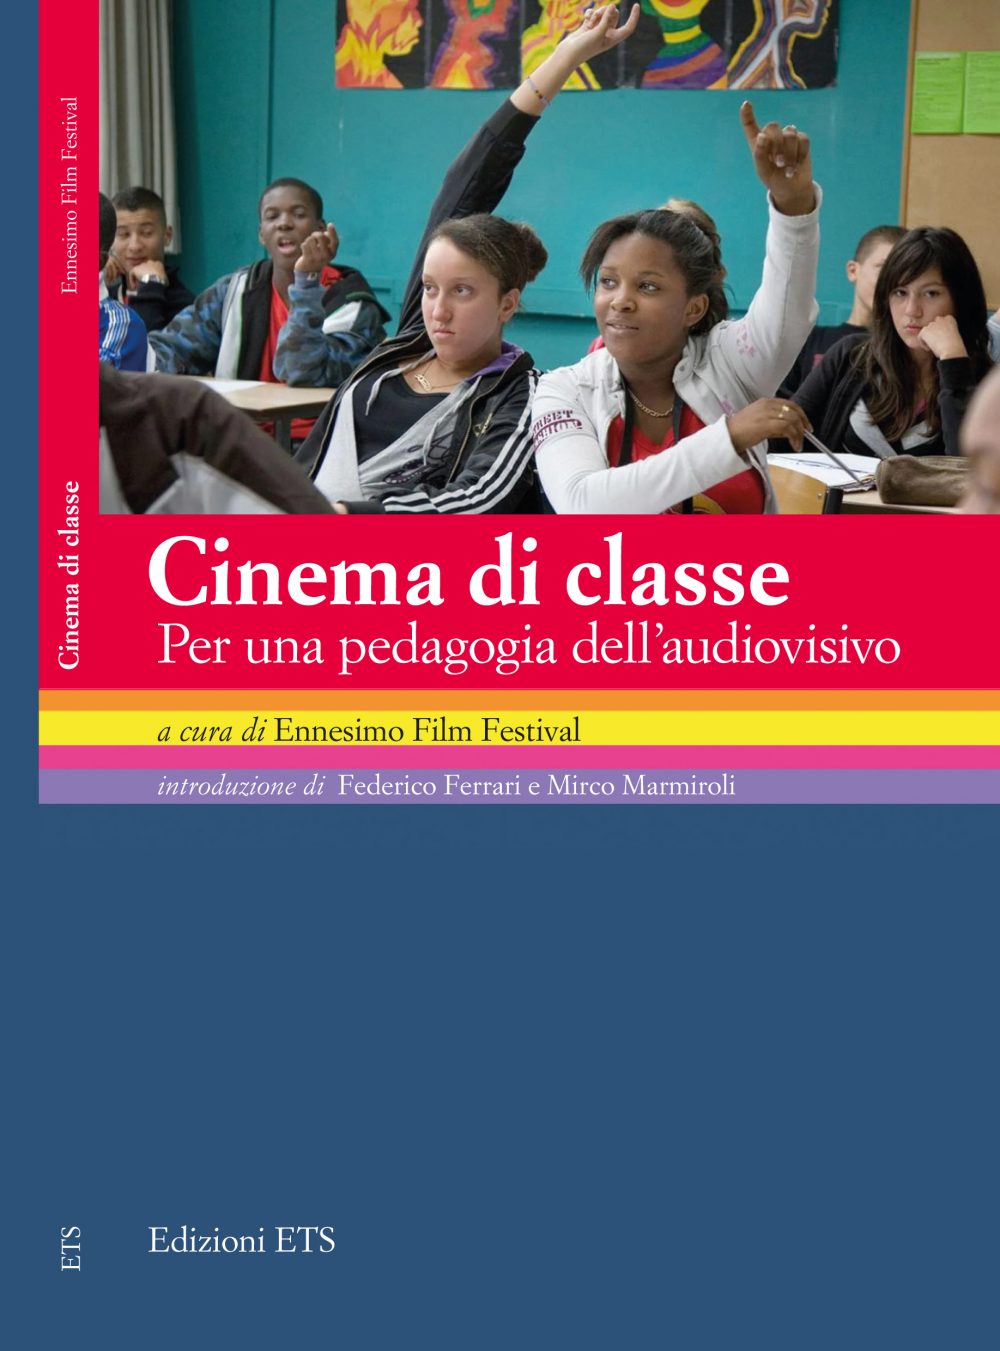 Cinema_di_classe_cover